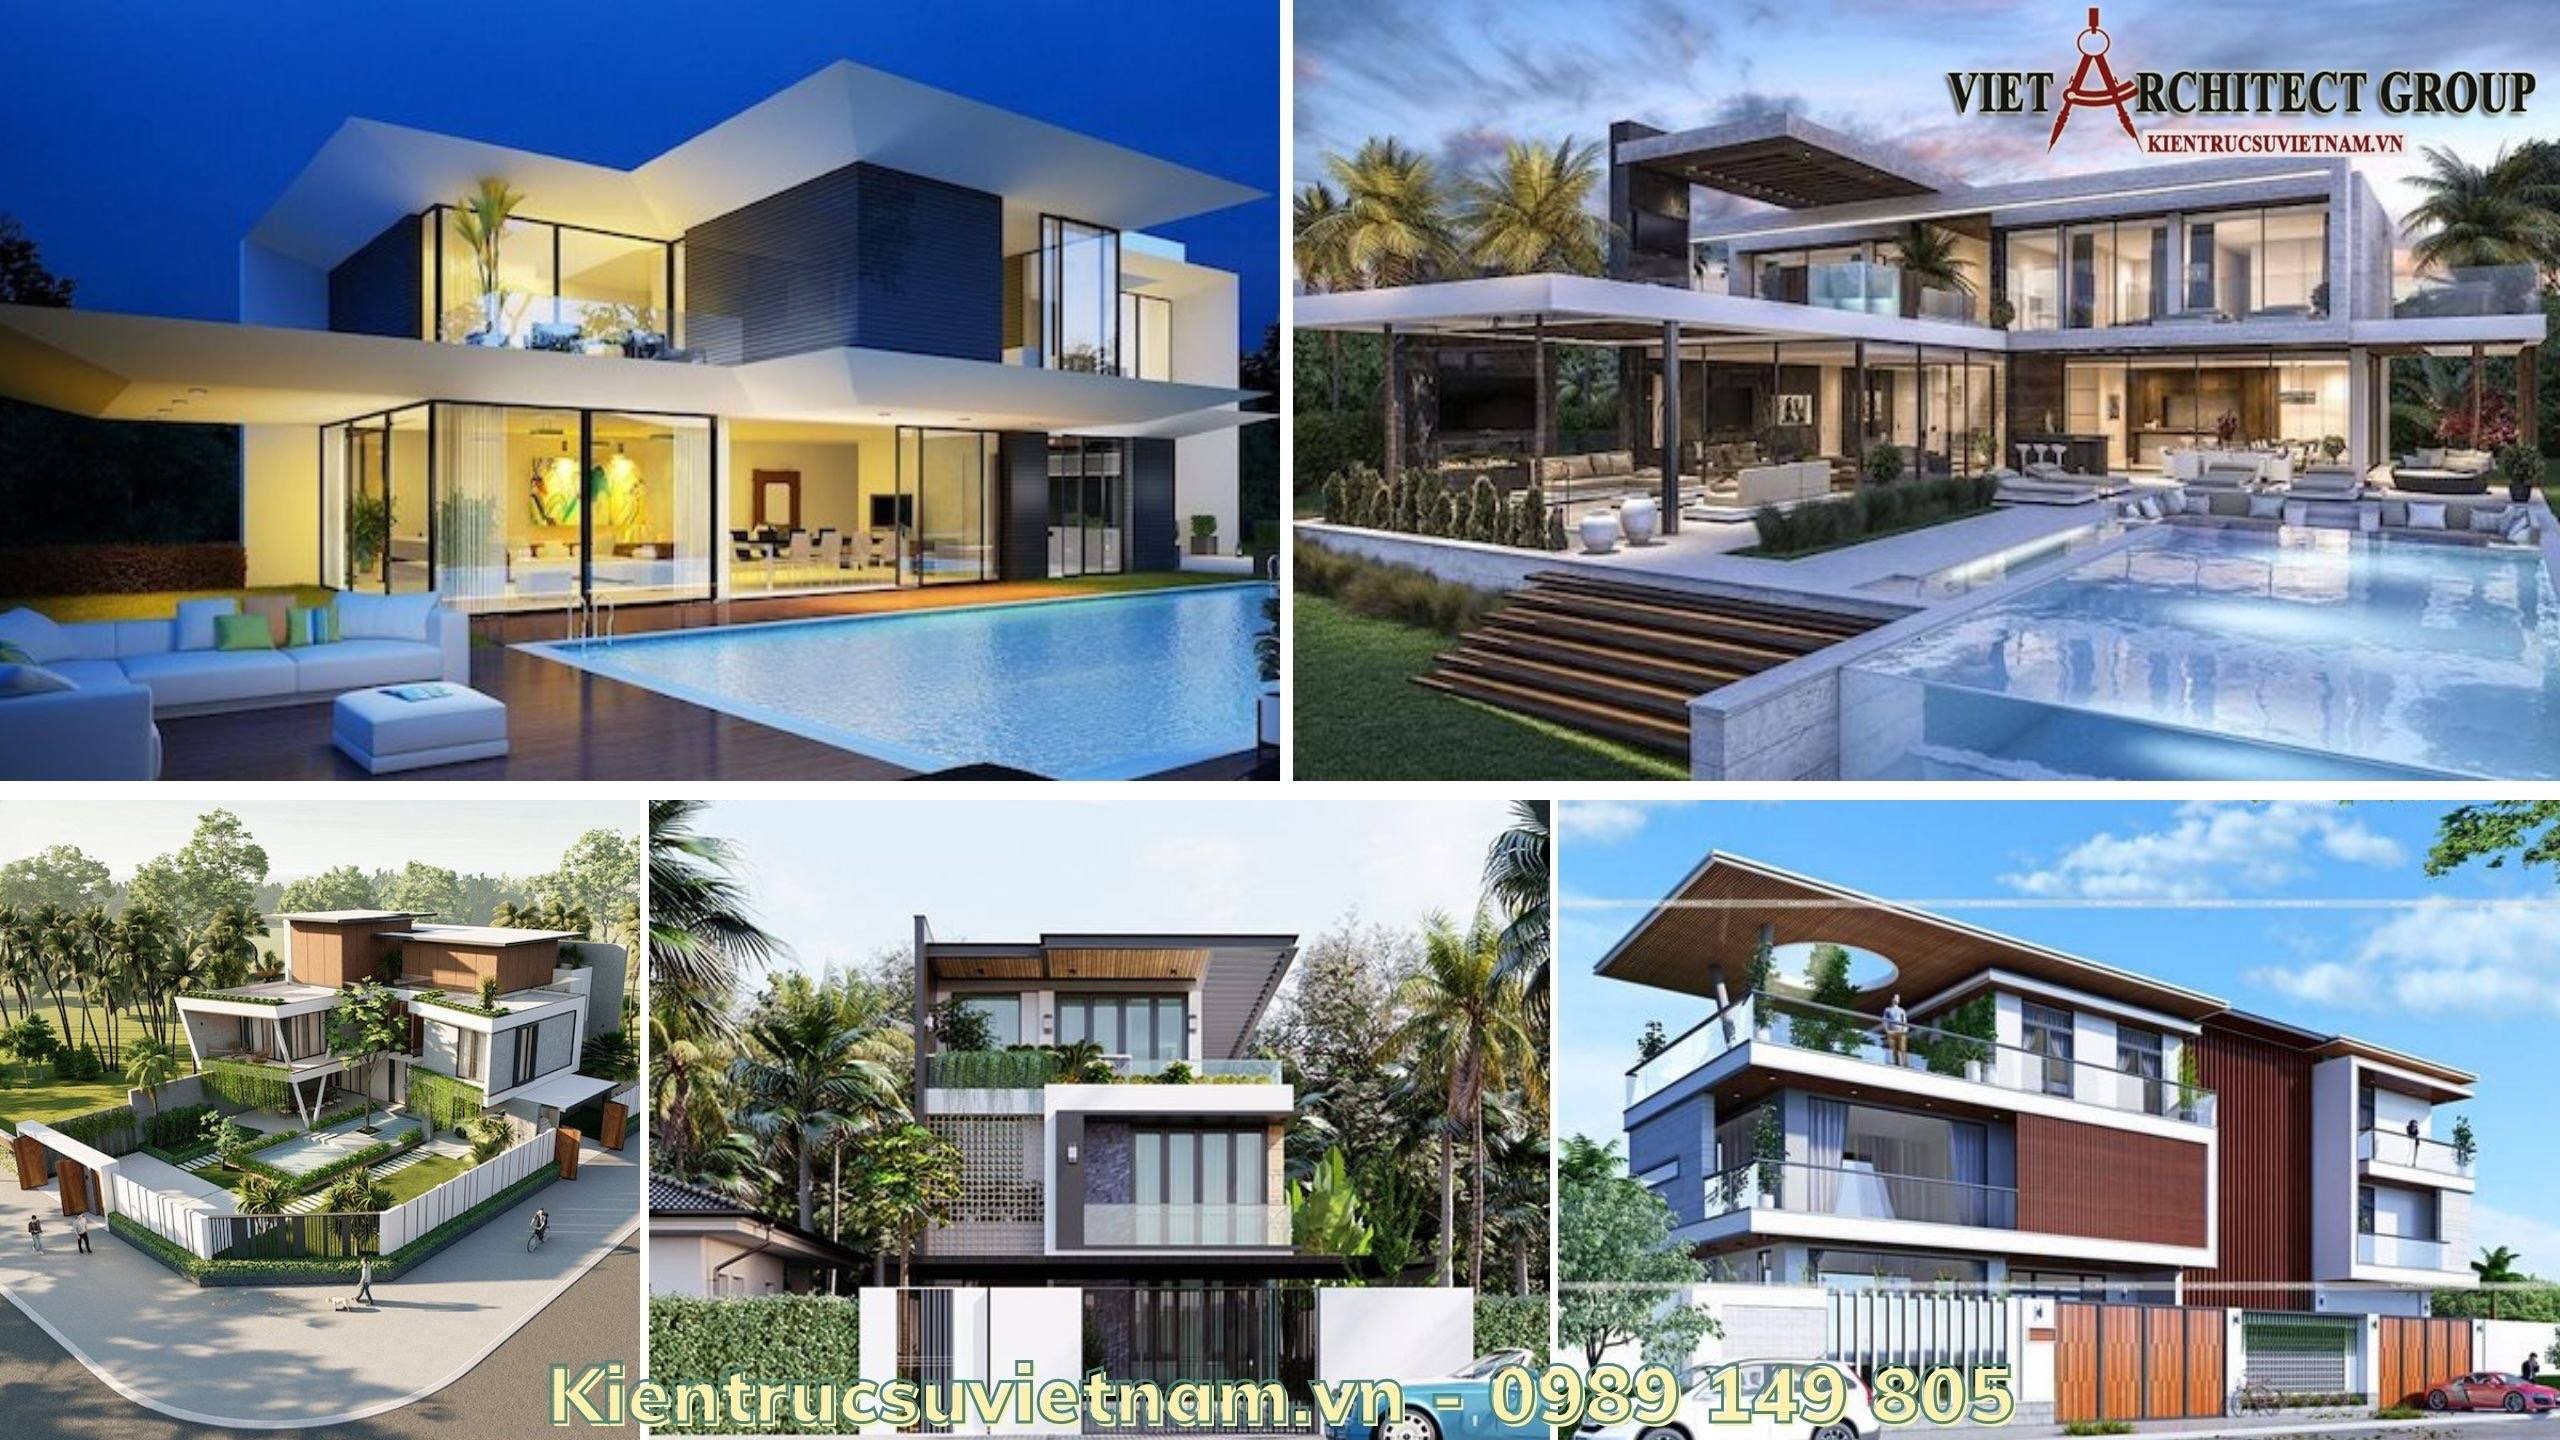 Những thiết kế hàng đầu của Việt Architect Group